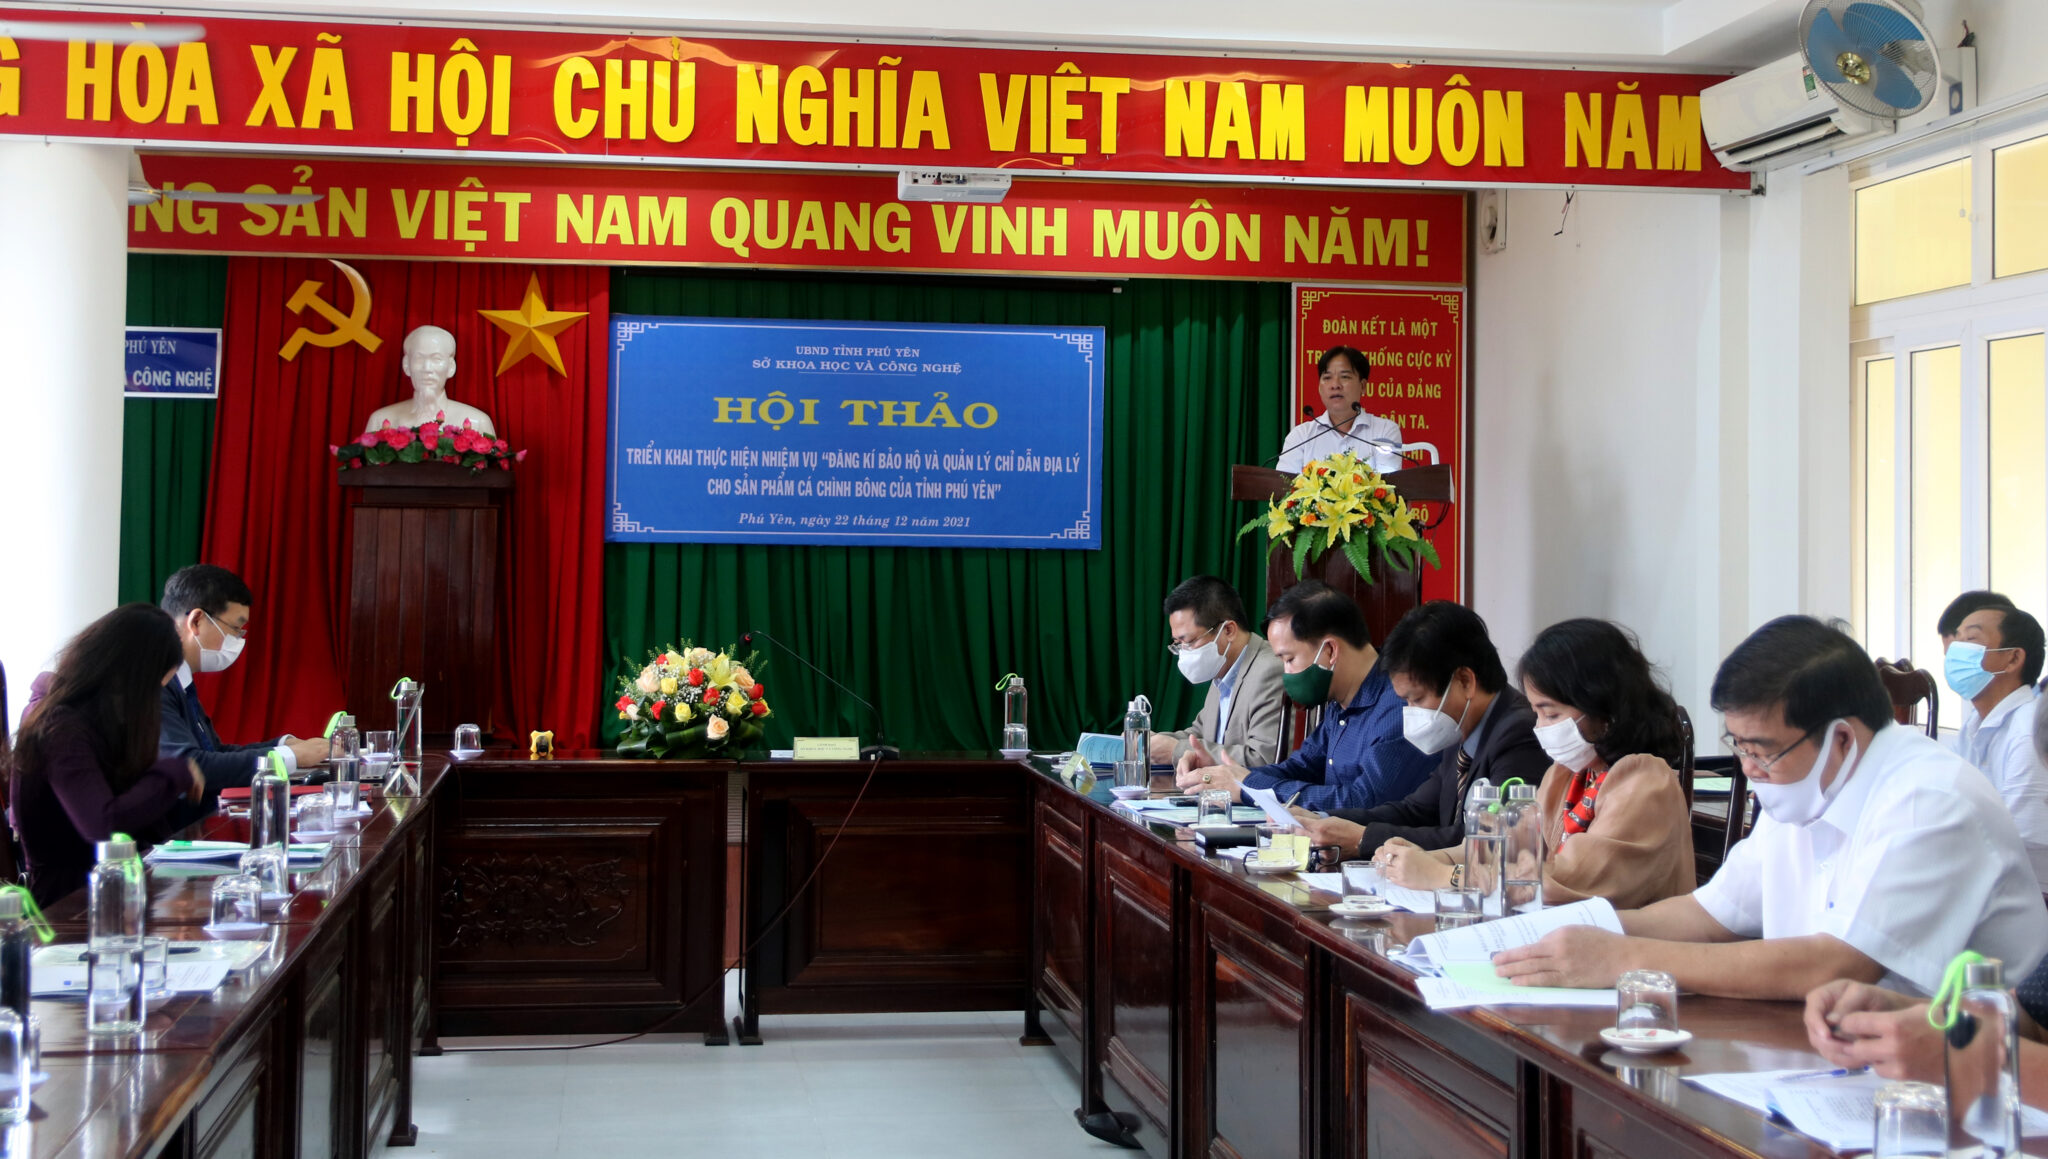 Ông Nguyễn Văn Ga, thư ký khoa học của nhiệm vụ đang trình bày tóm tắt nội dung thực hiện nhiệm vụ